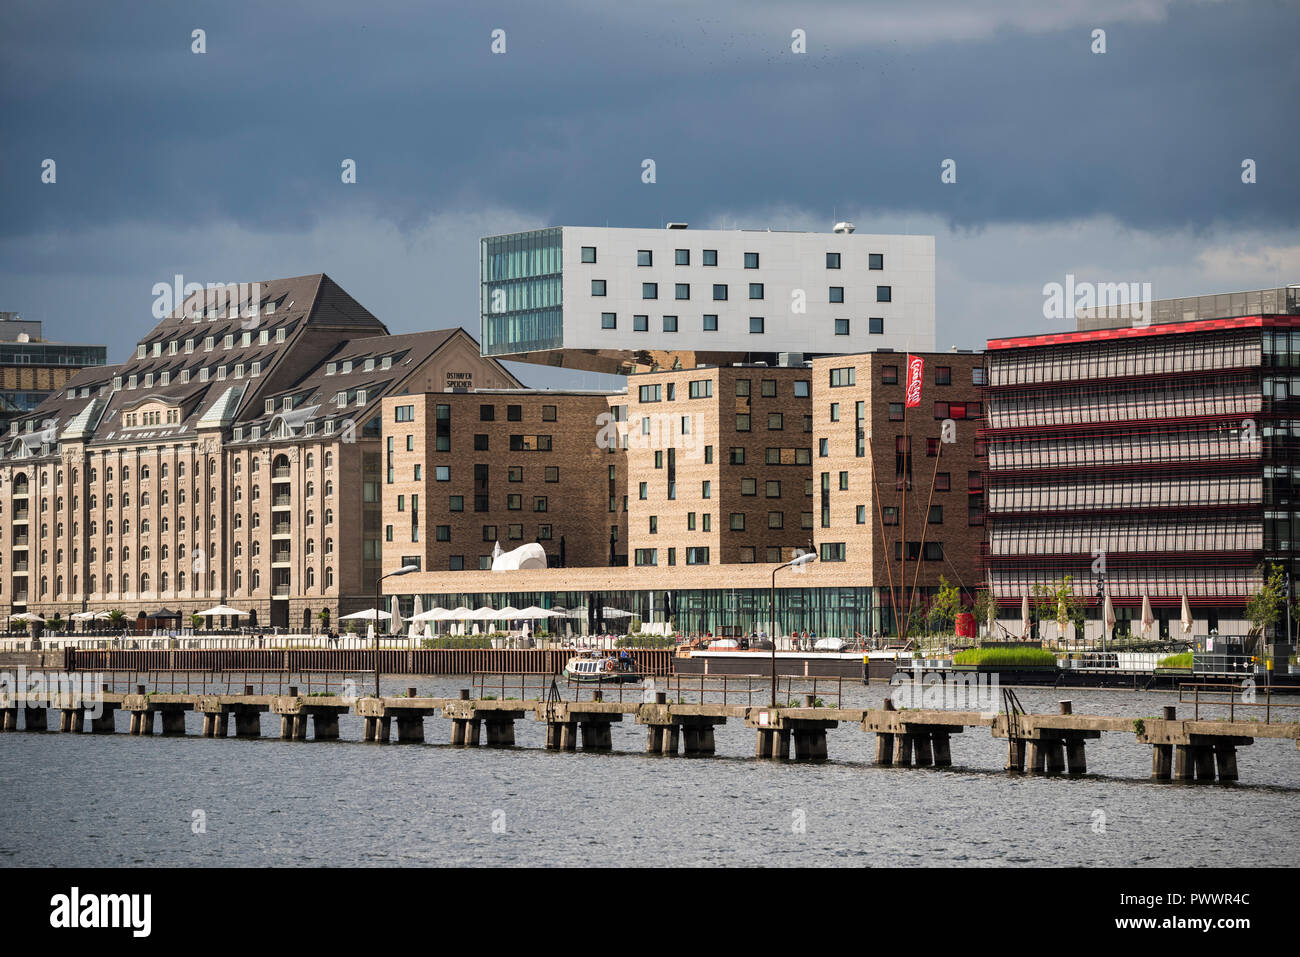 Berlín. Alemania. Los edificios en el reurbanizado Osthafen (East Harbor) sobre el río Spree, Friedrichschain. L-R; Spreespeicher, Hotel Nhow, Coca Cola H Foto de stock